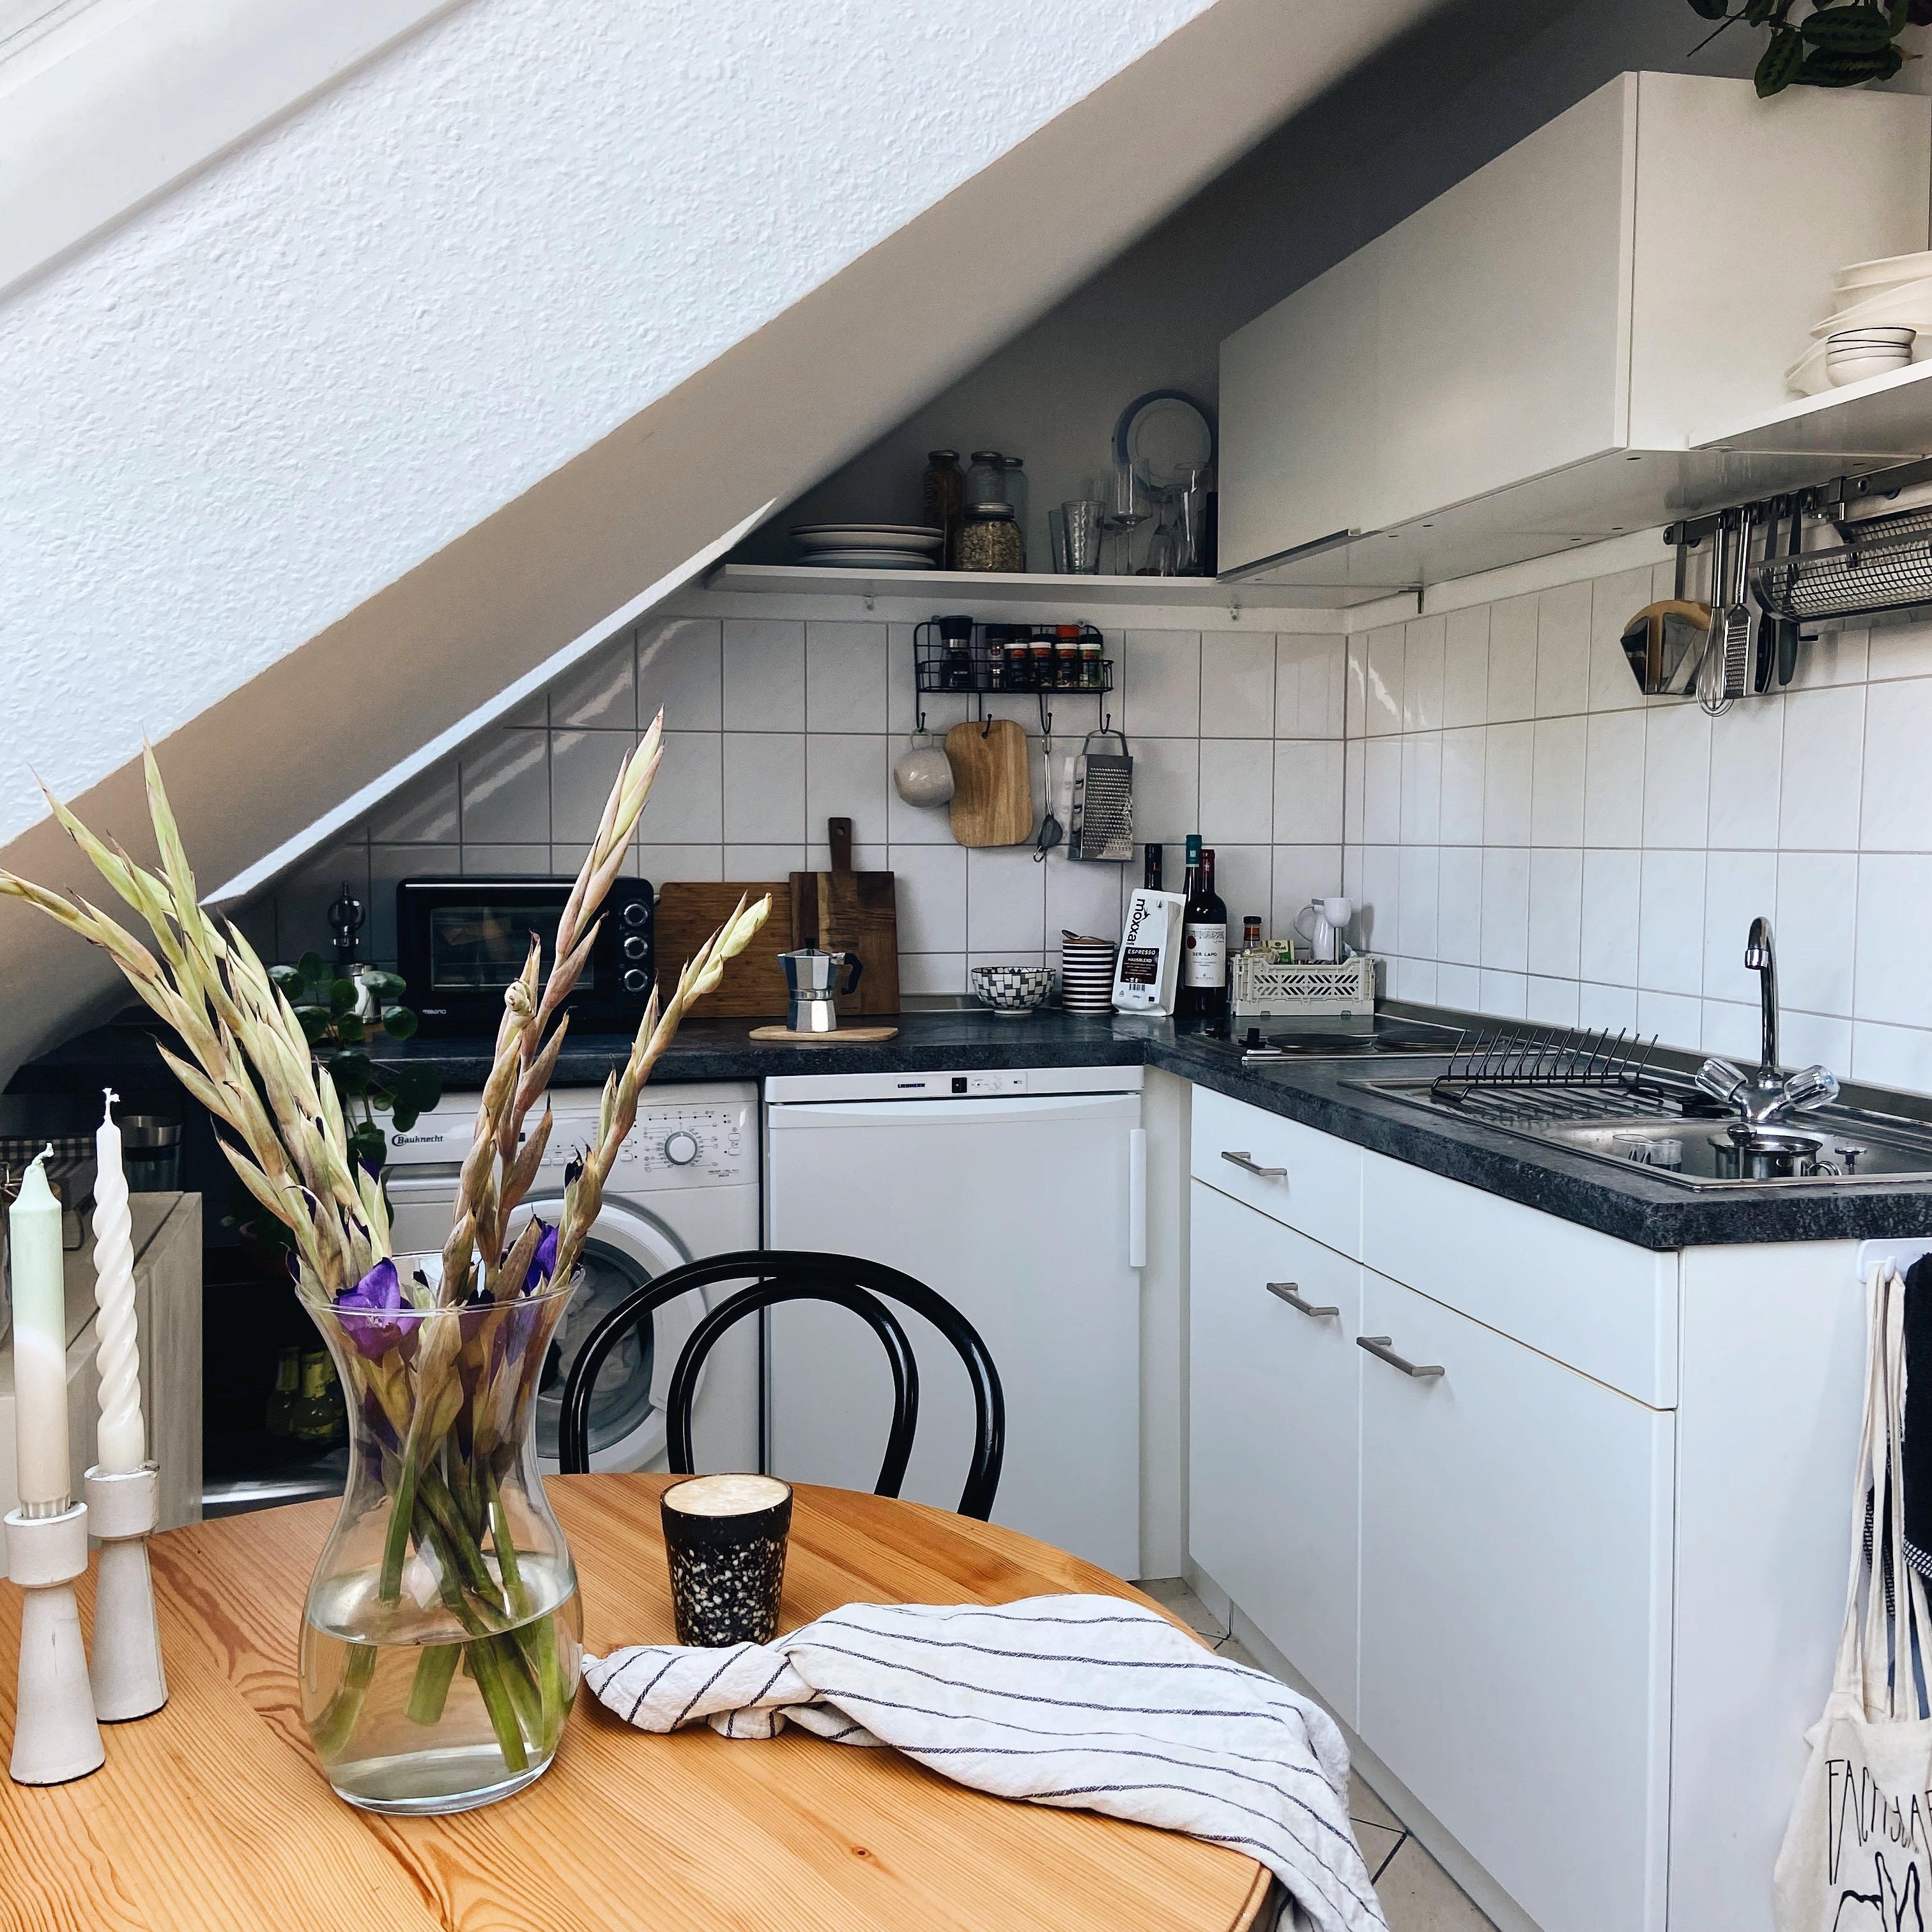 Kleines #küchenupdate denn wir haben die Arbeitsplatte (Profimässig 😂) foliert ☺️ 
#küchenliebe #gladiolen #kitchen